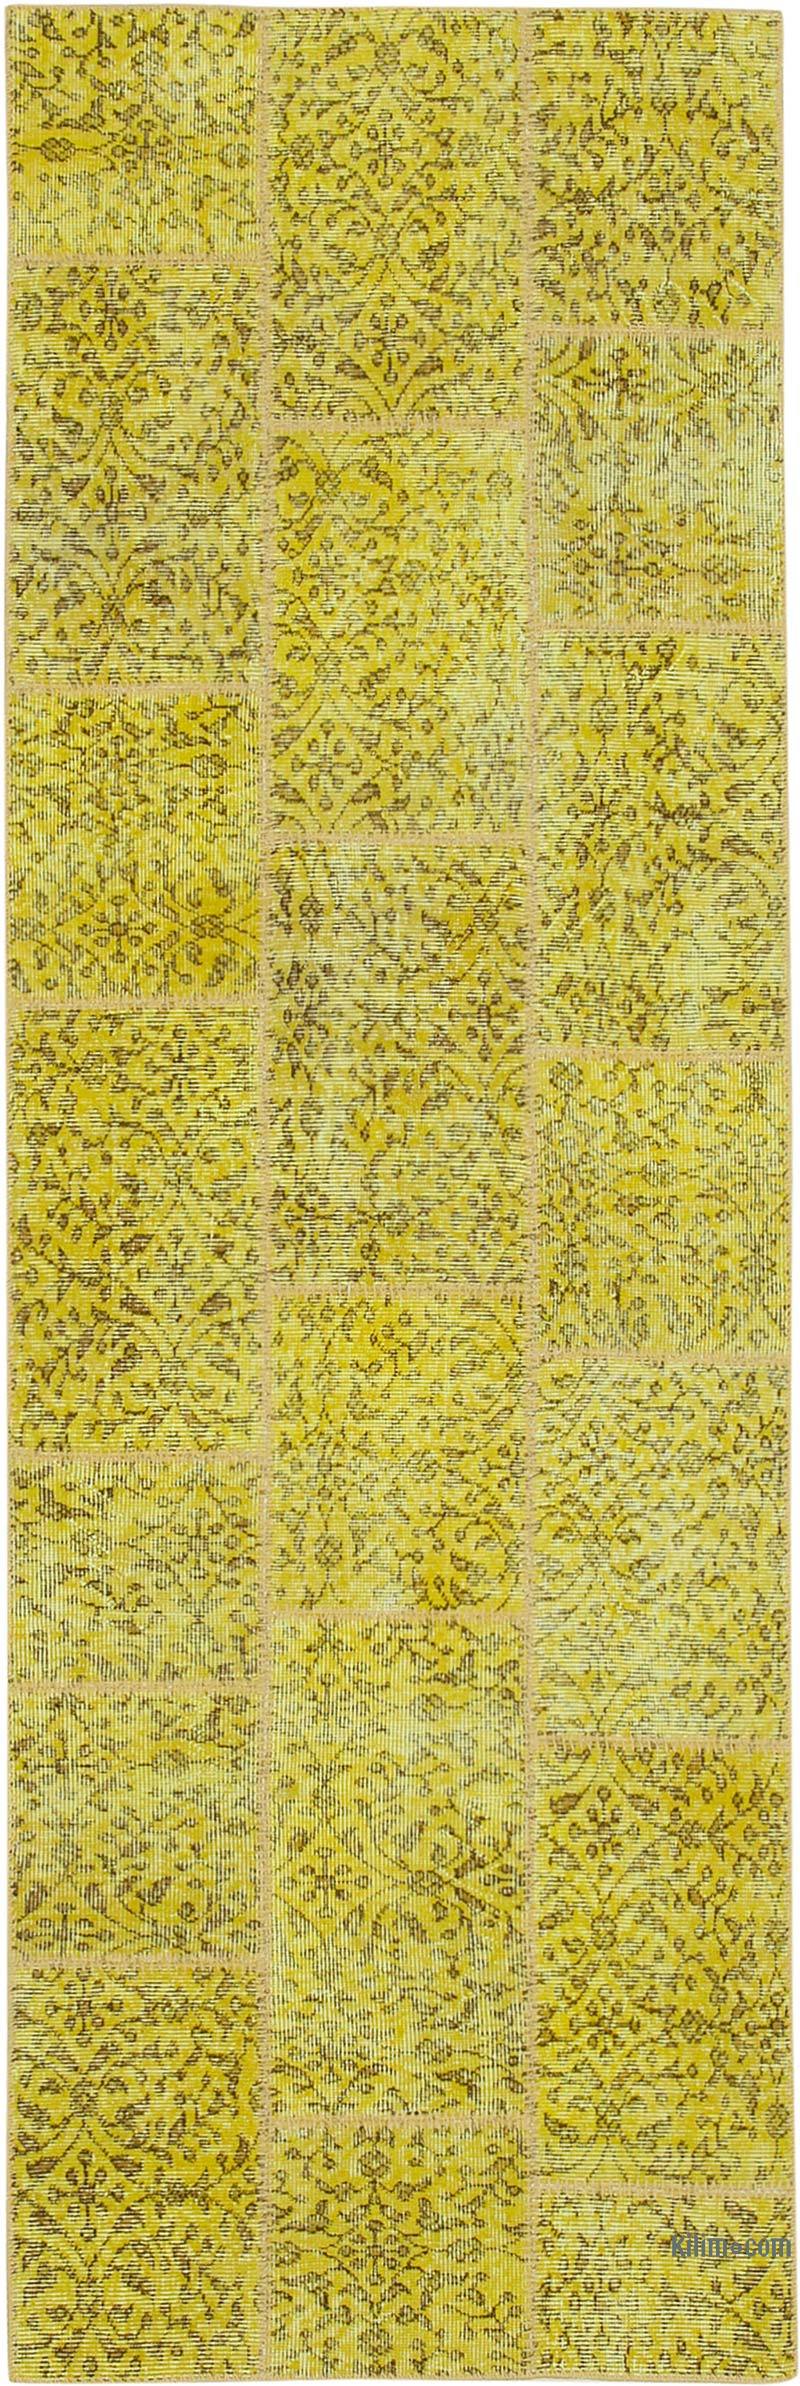 Sarı Boyalı Patchwork Halı - 86 cm x 261 cm - K0053898